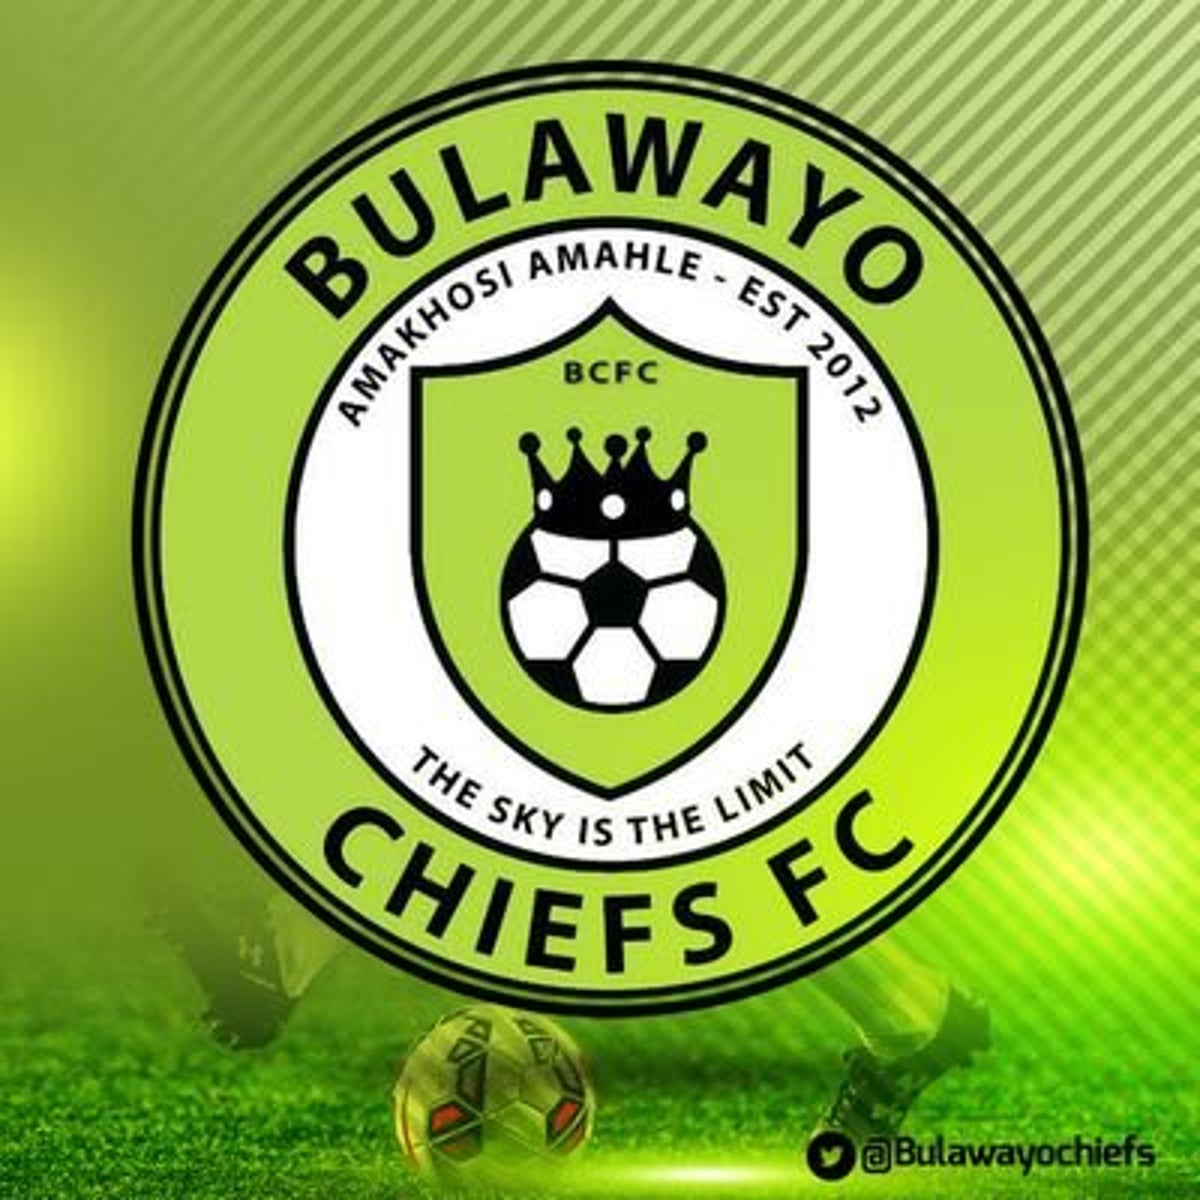 Bulawayo Chiefs team logo